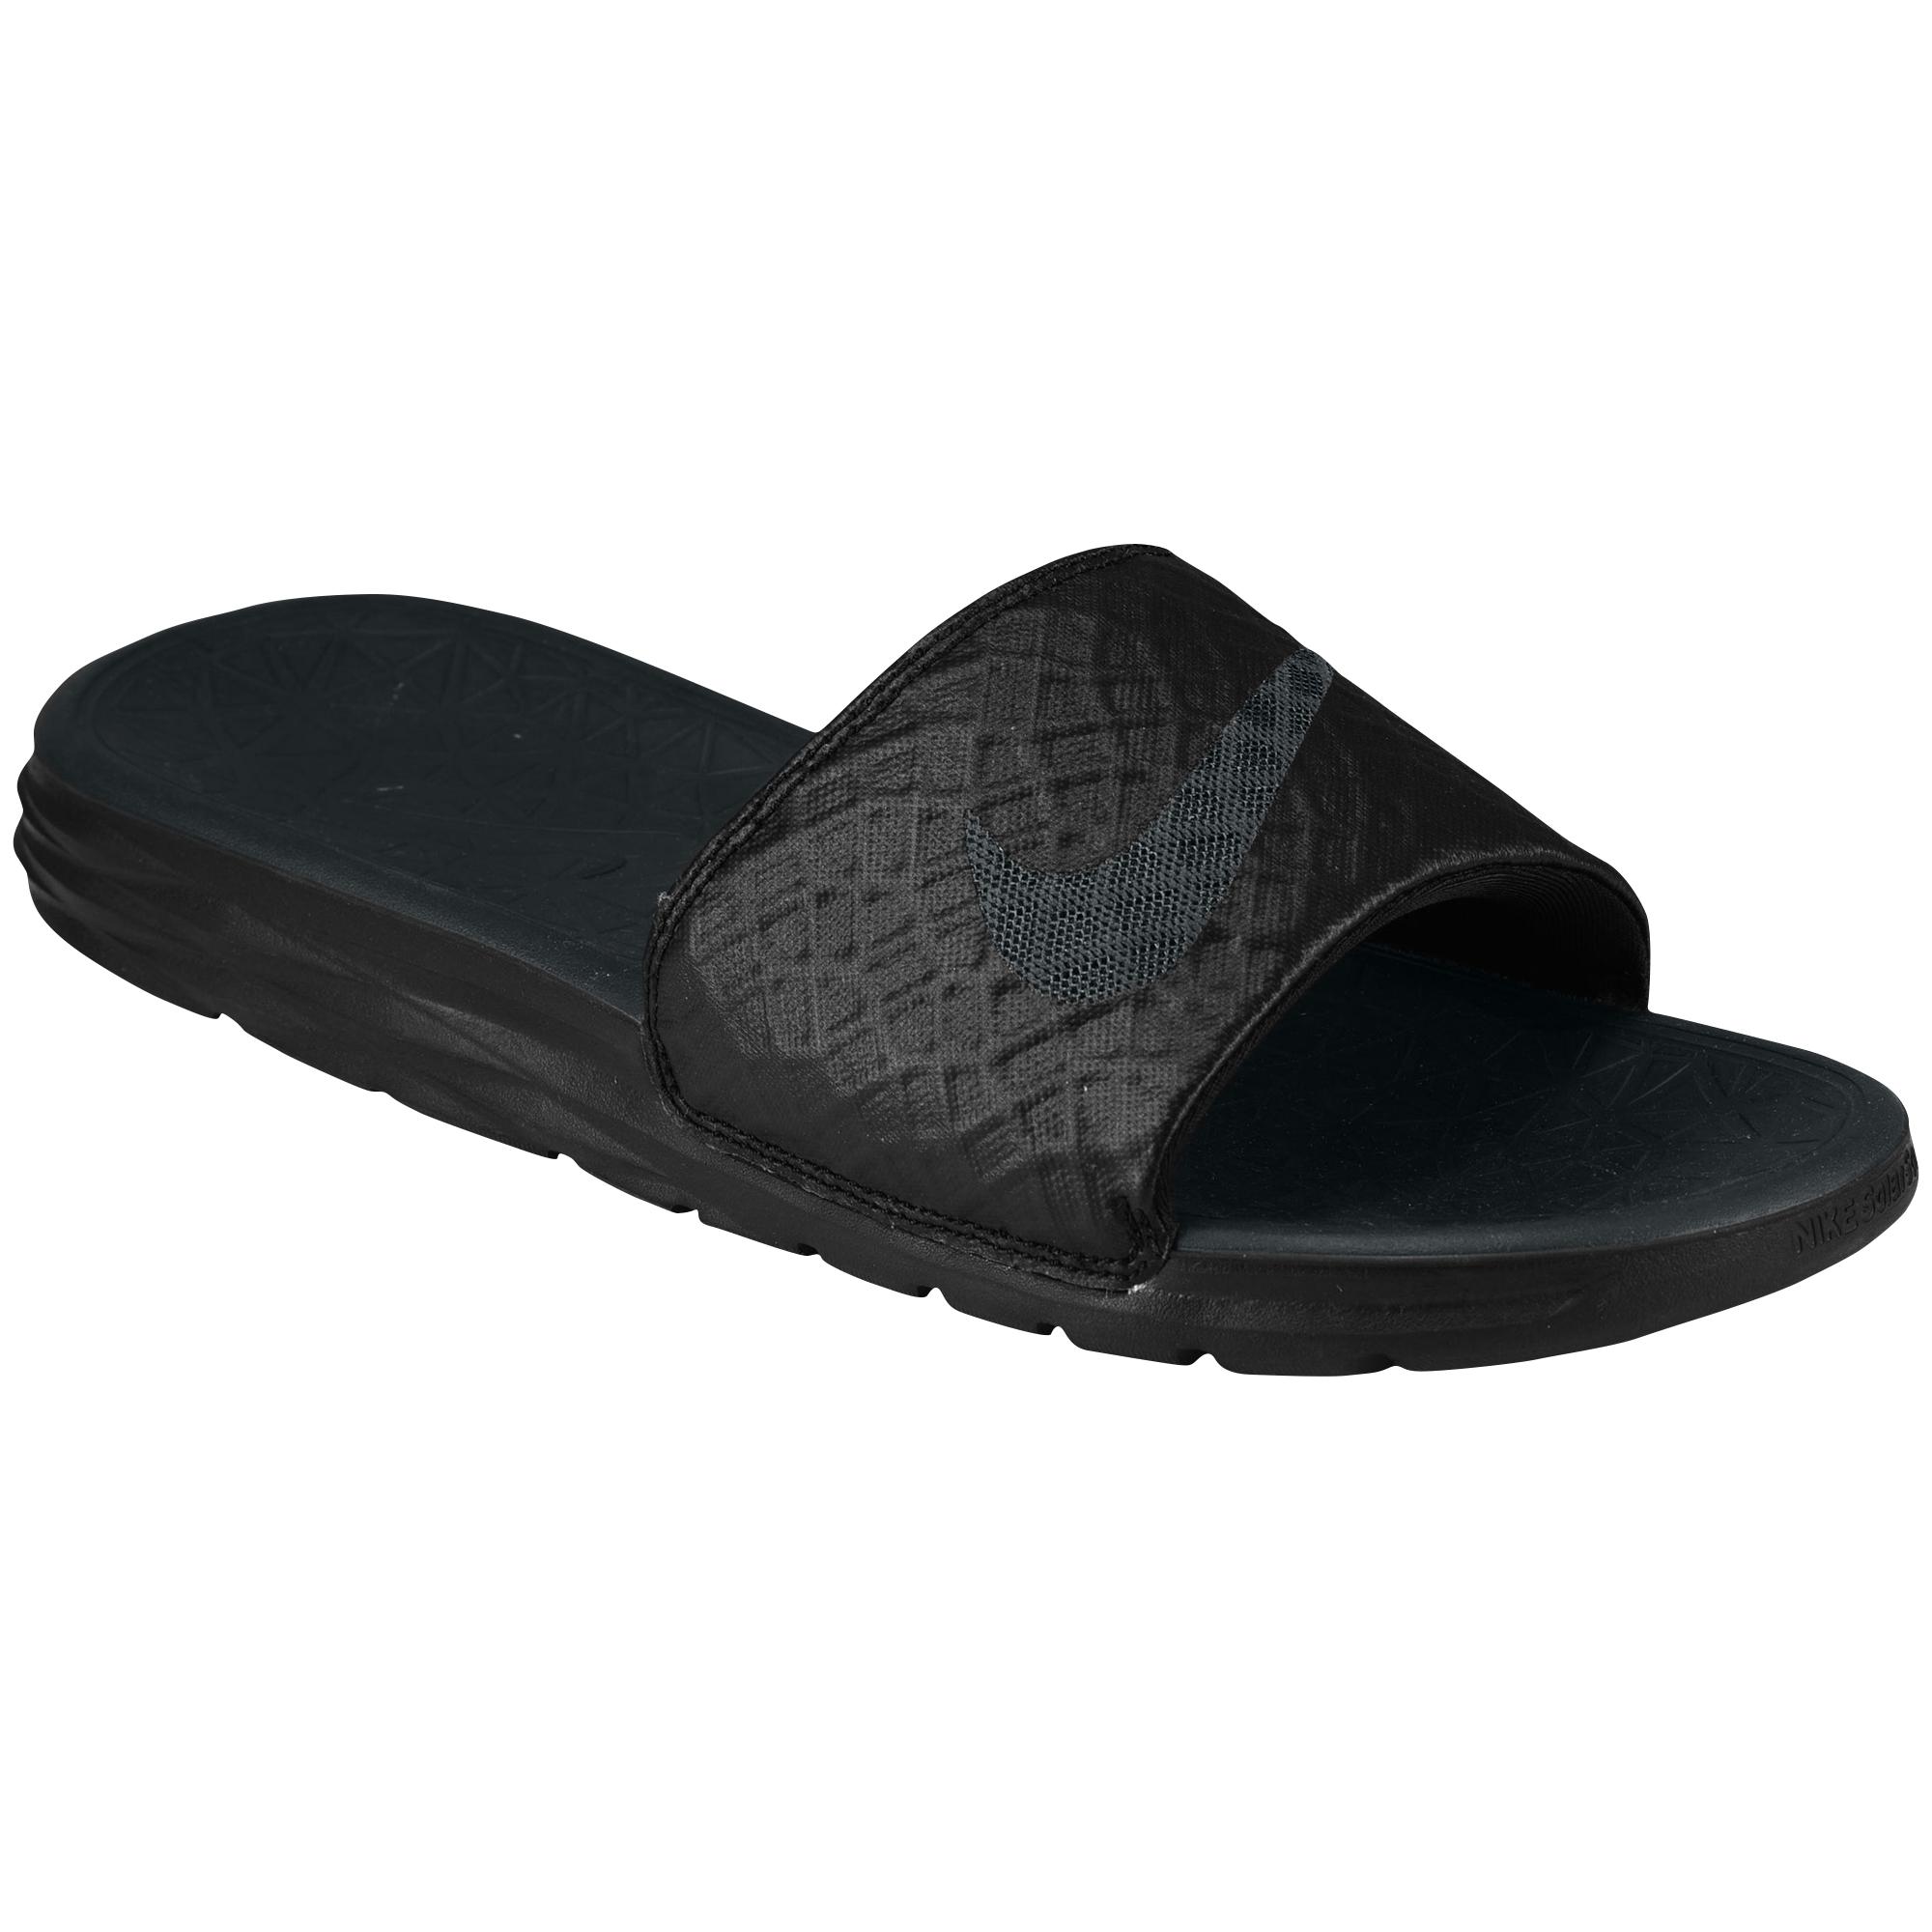 Nike Benassi Solarsoft Slide Athletic Sandal in Black for Men - Lyst